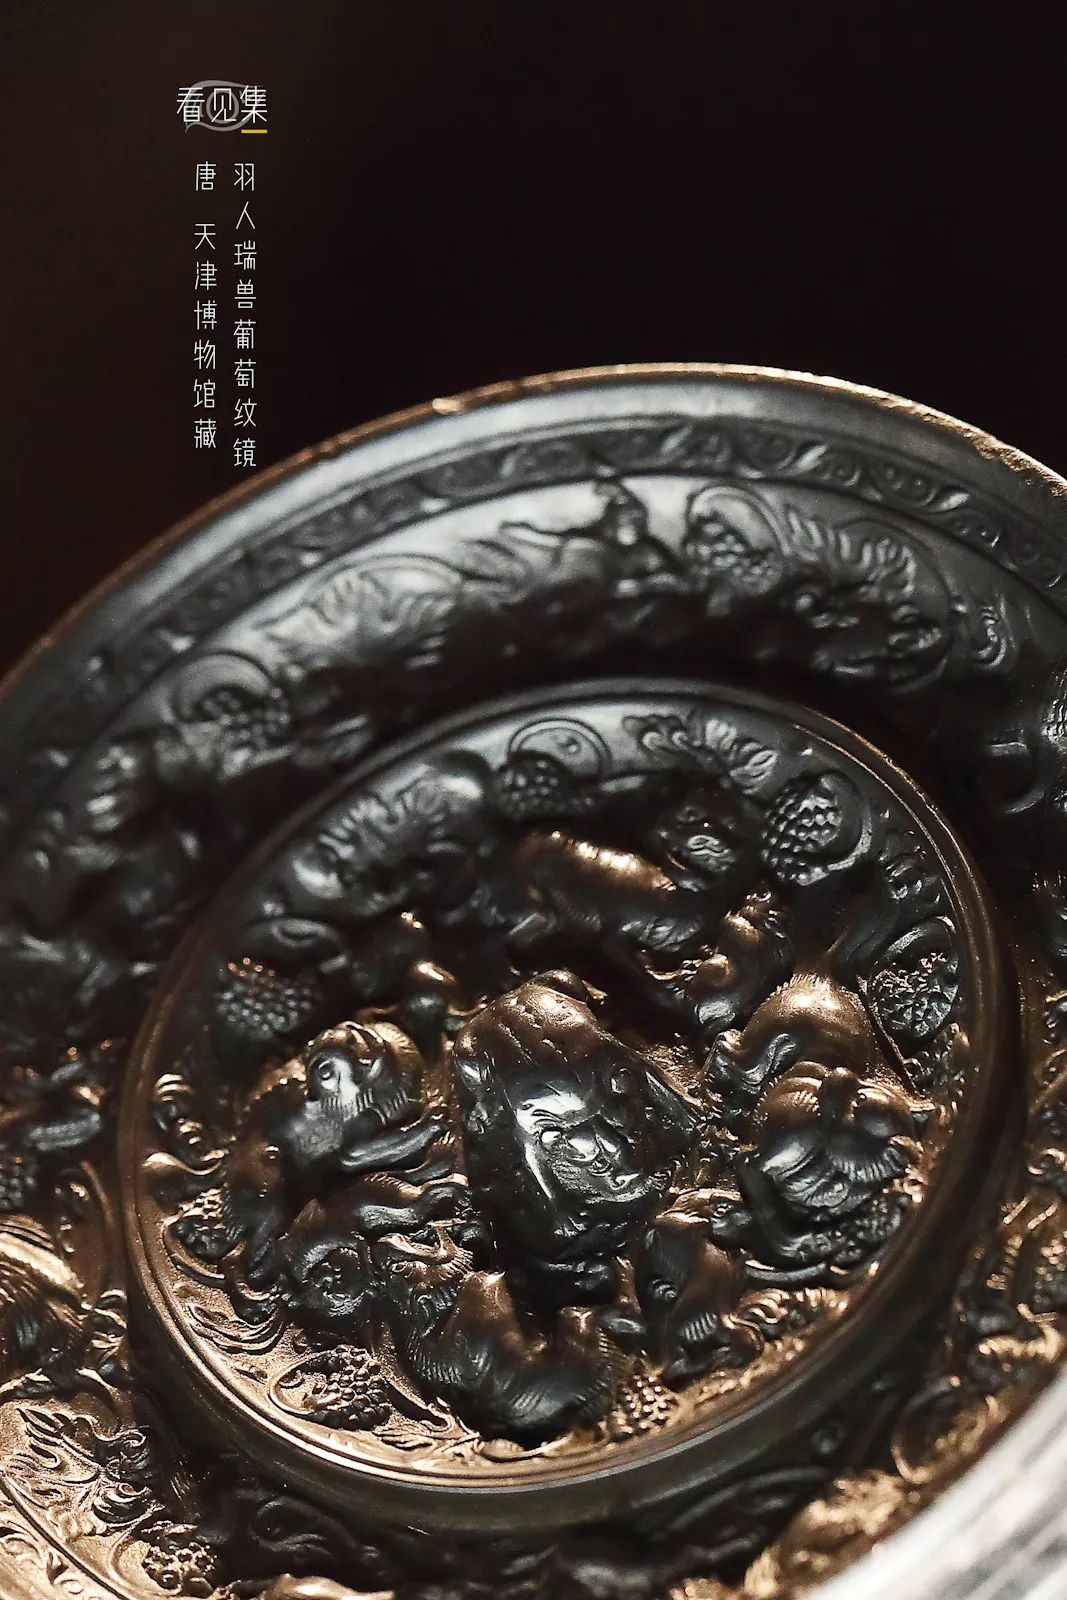 《古董局中局》里那面唐海兽葡萄纹铜镜找到了